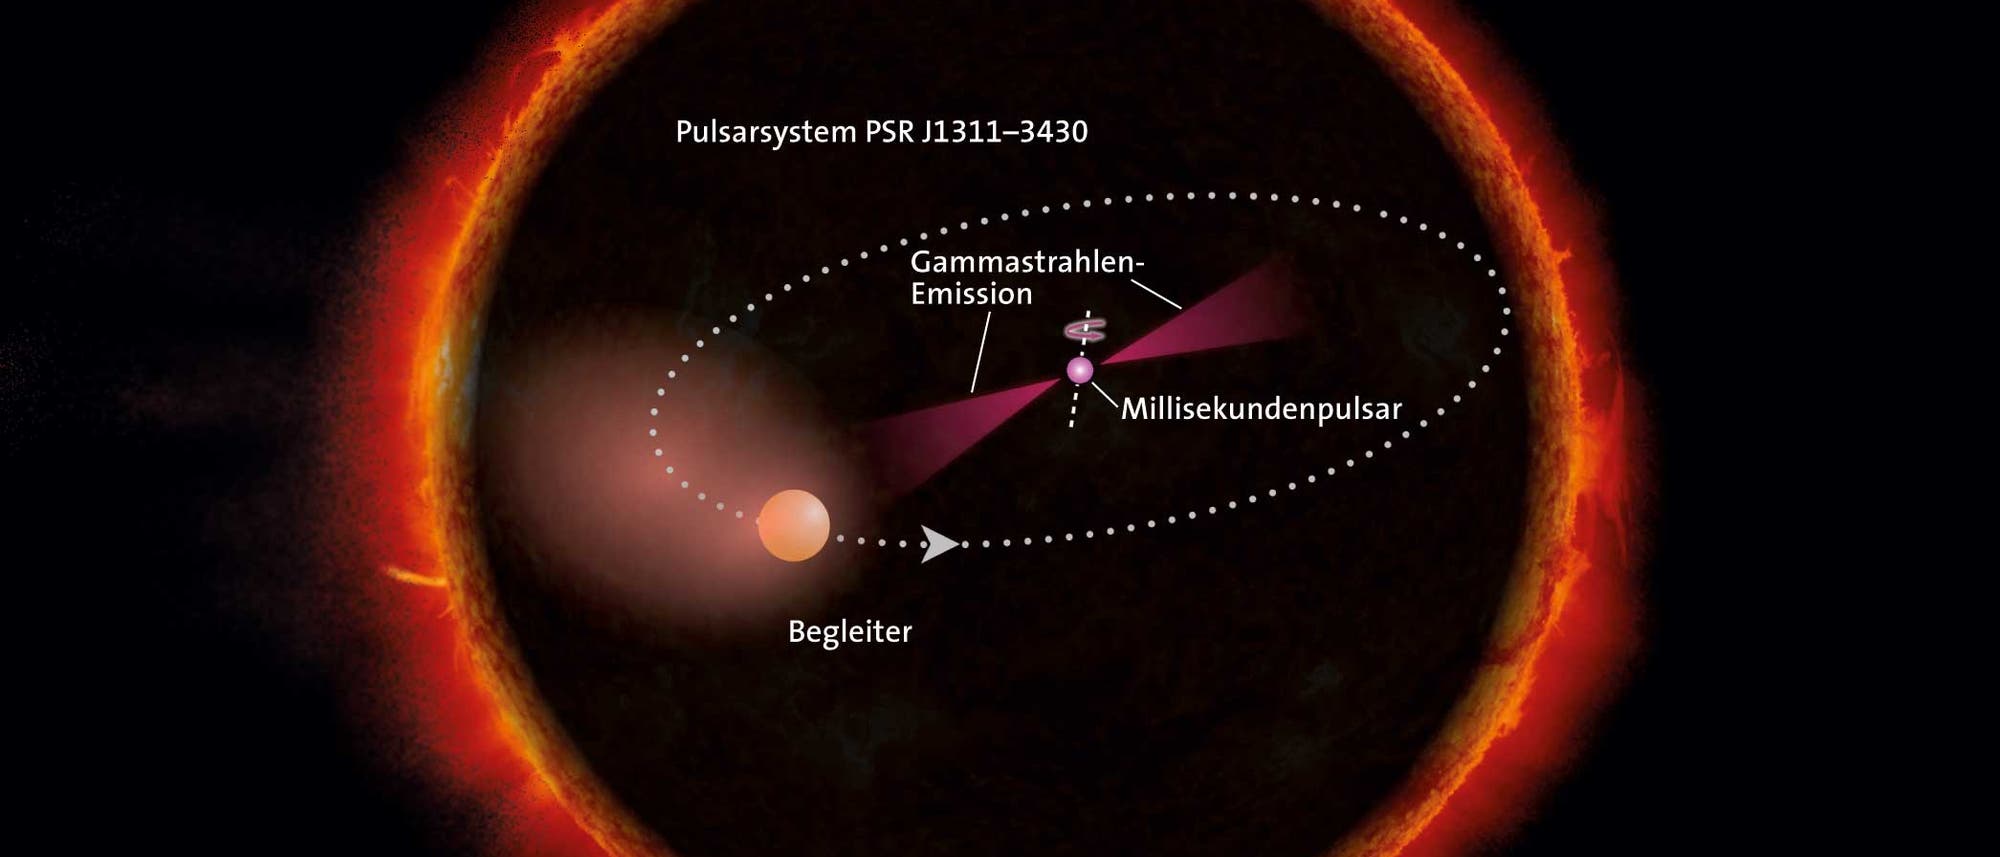 Der Millisekundenpulsar im außergewöhnlichen Pulsarsystem Psr J1311-3430 